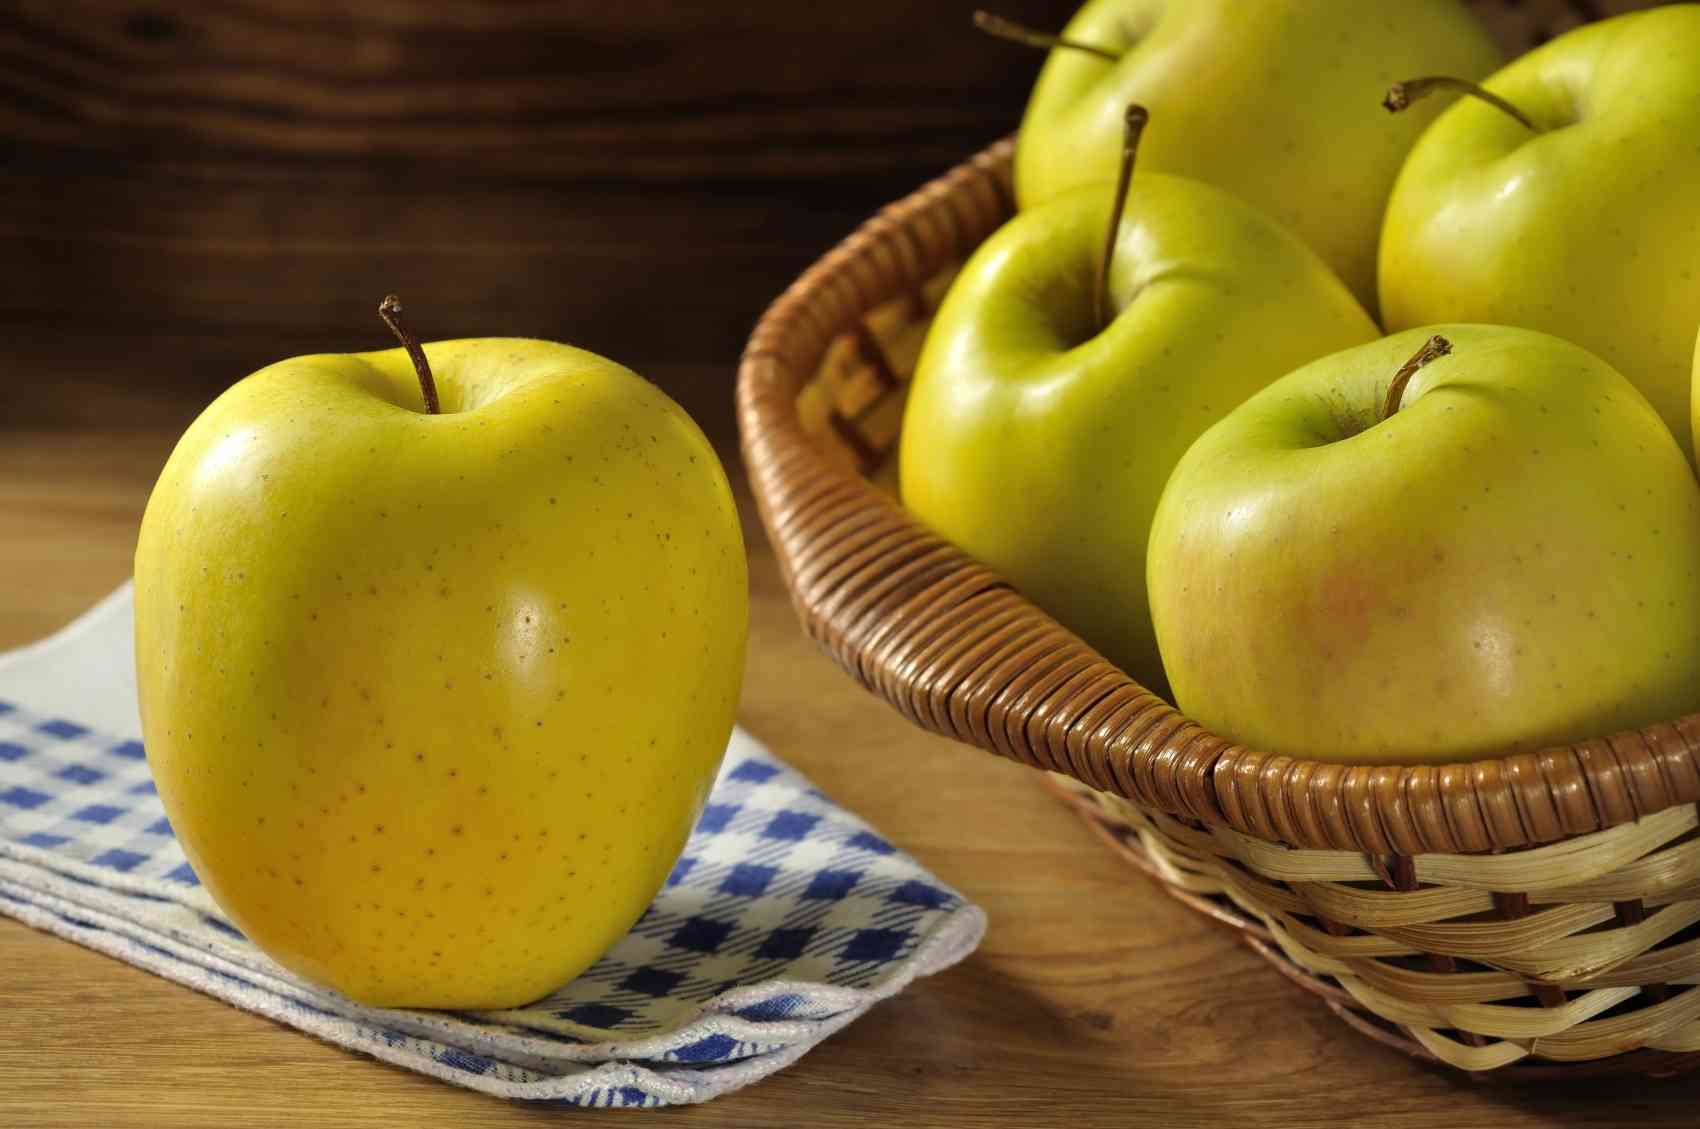 Golden delicious apples benefits